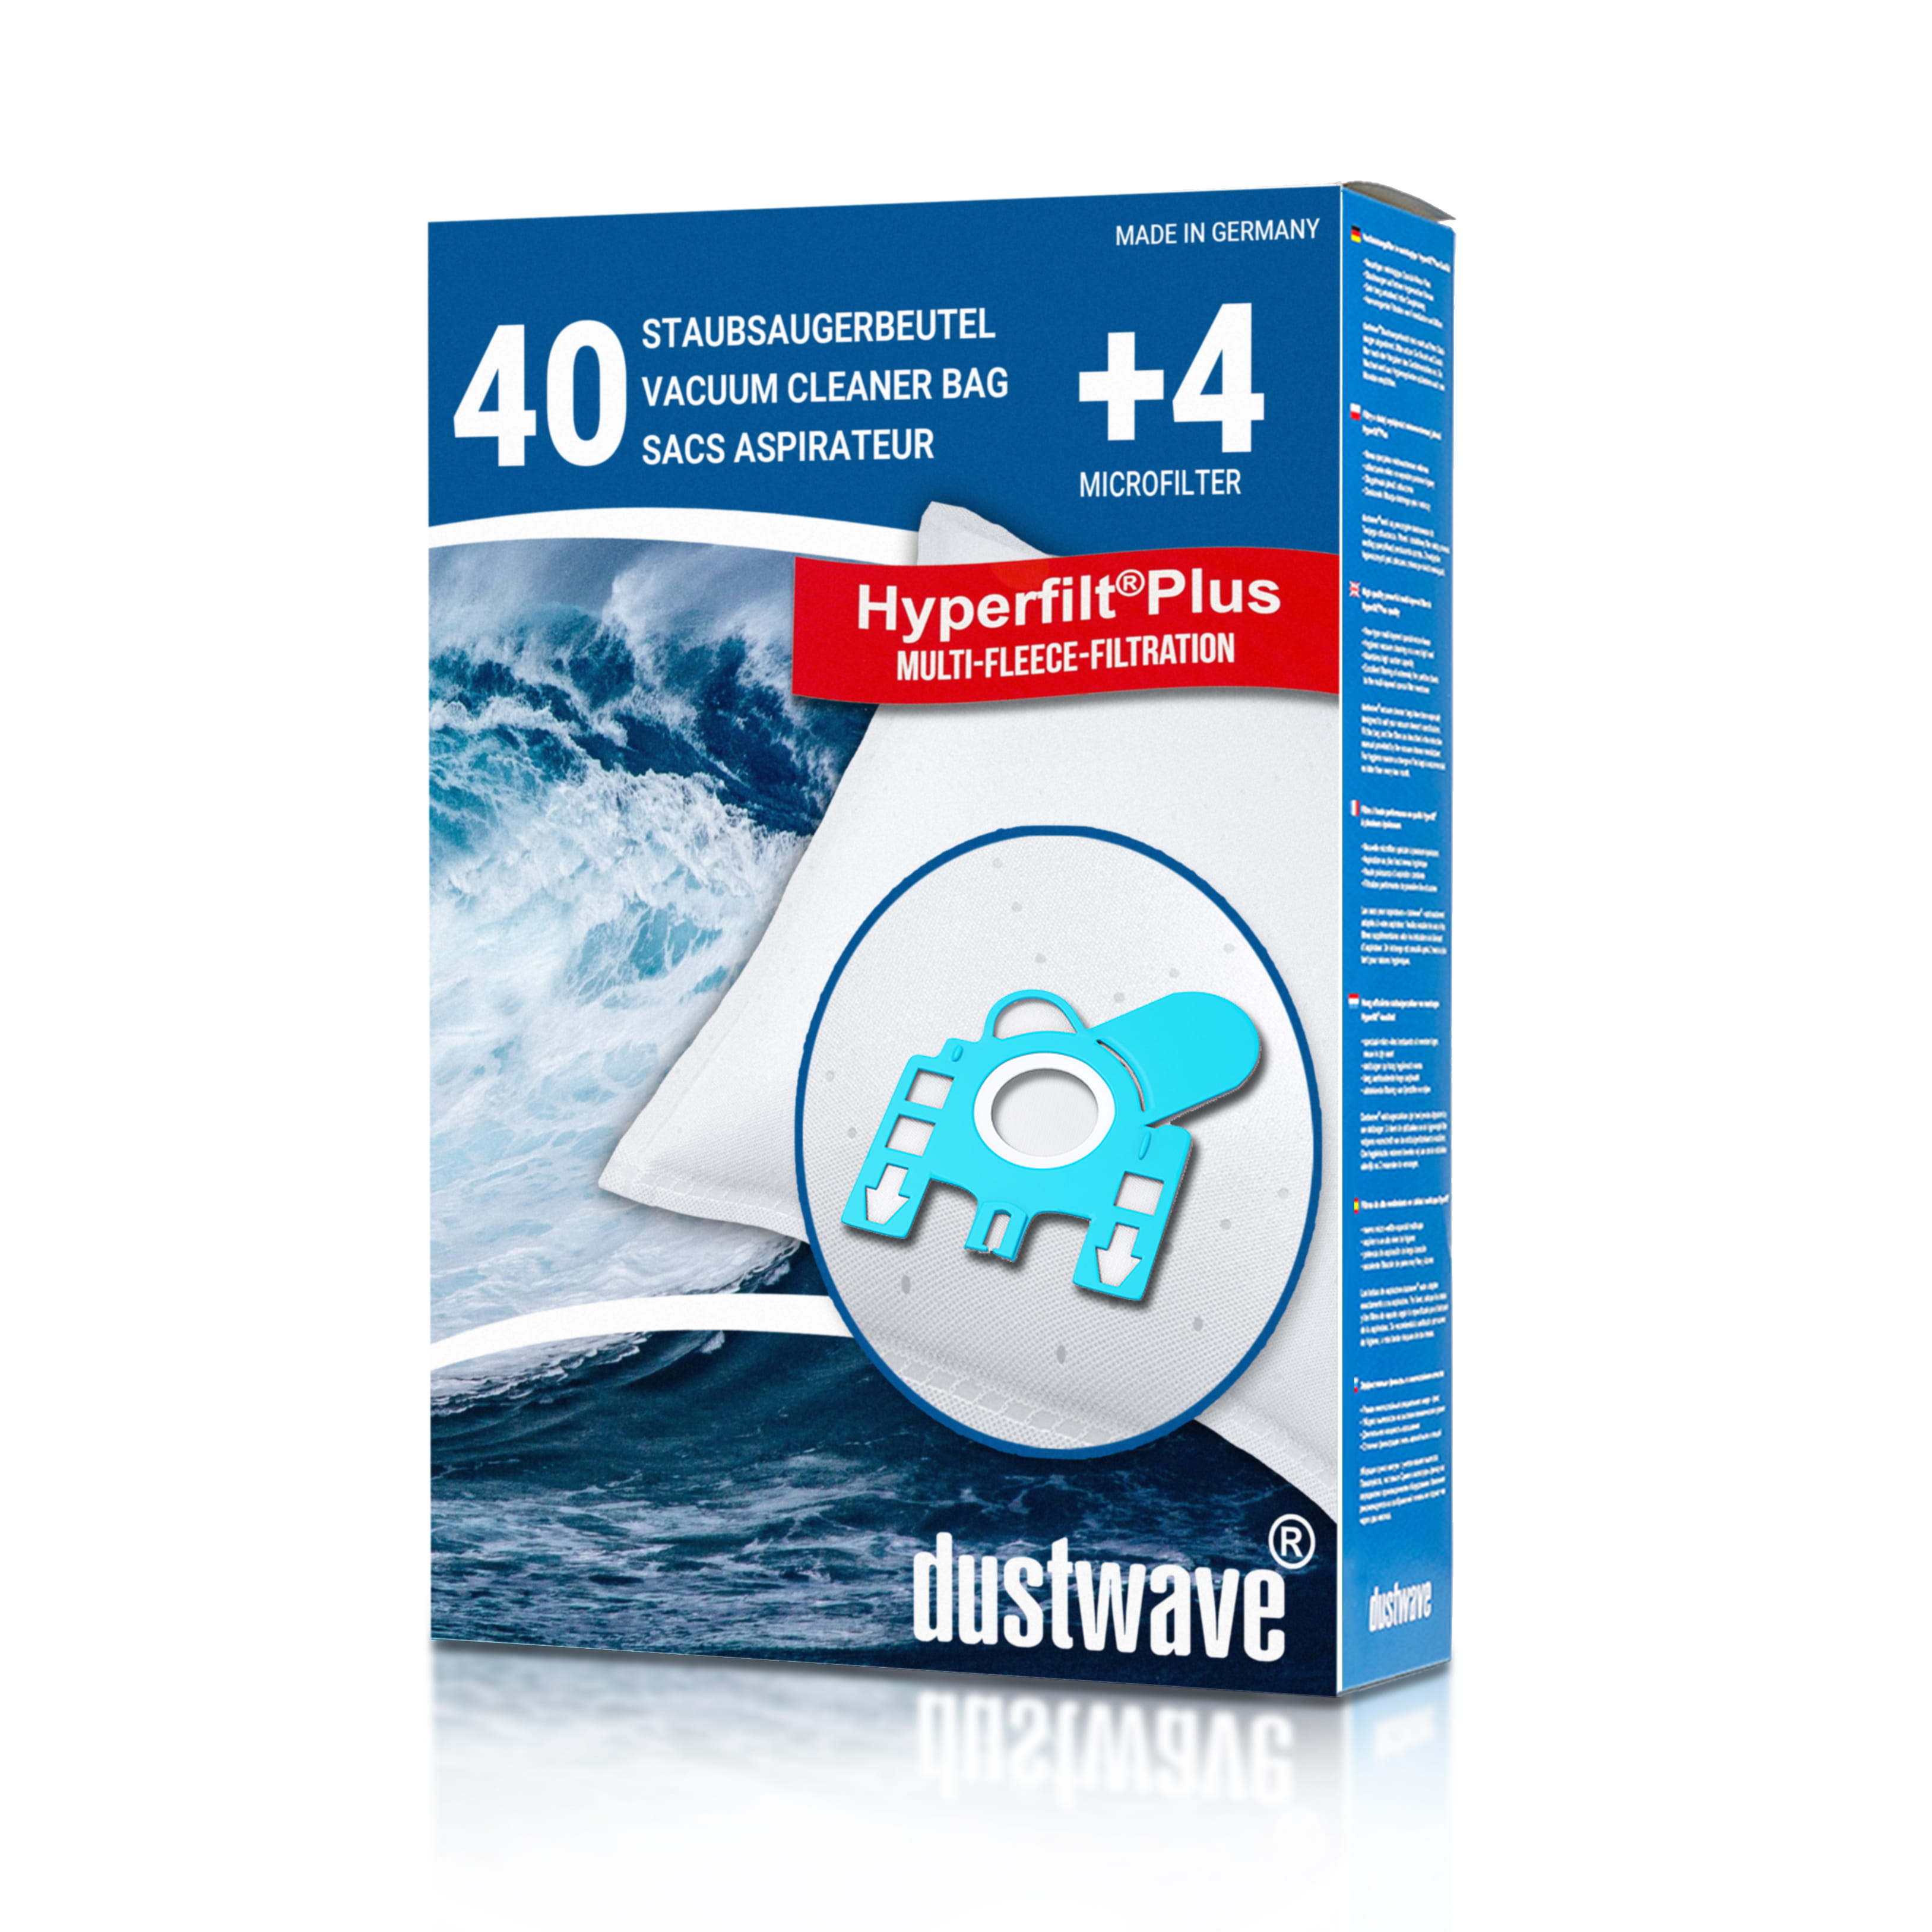 Dustwave® 40 Staubsaugerbeutel für Hoover 39000228 - hocheffizient, mehrlagiges Mikrovlies mit Hygieneverschluss - Made in Germany